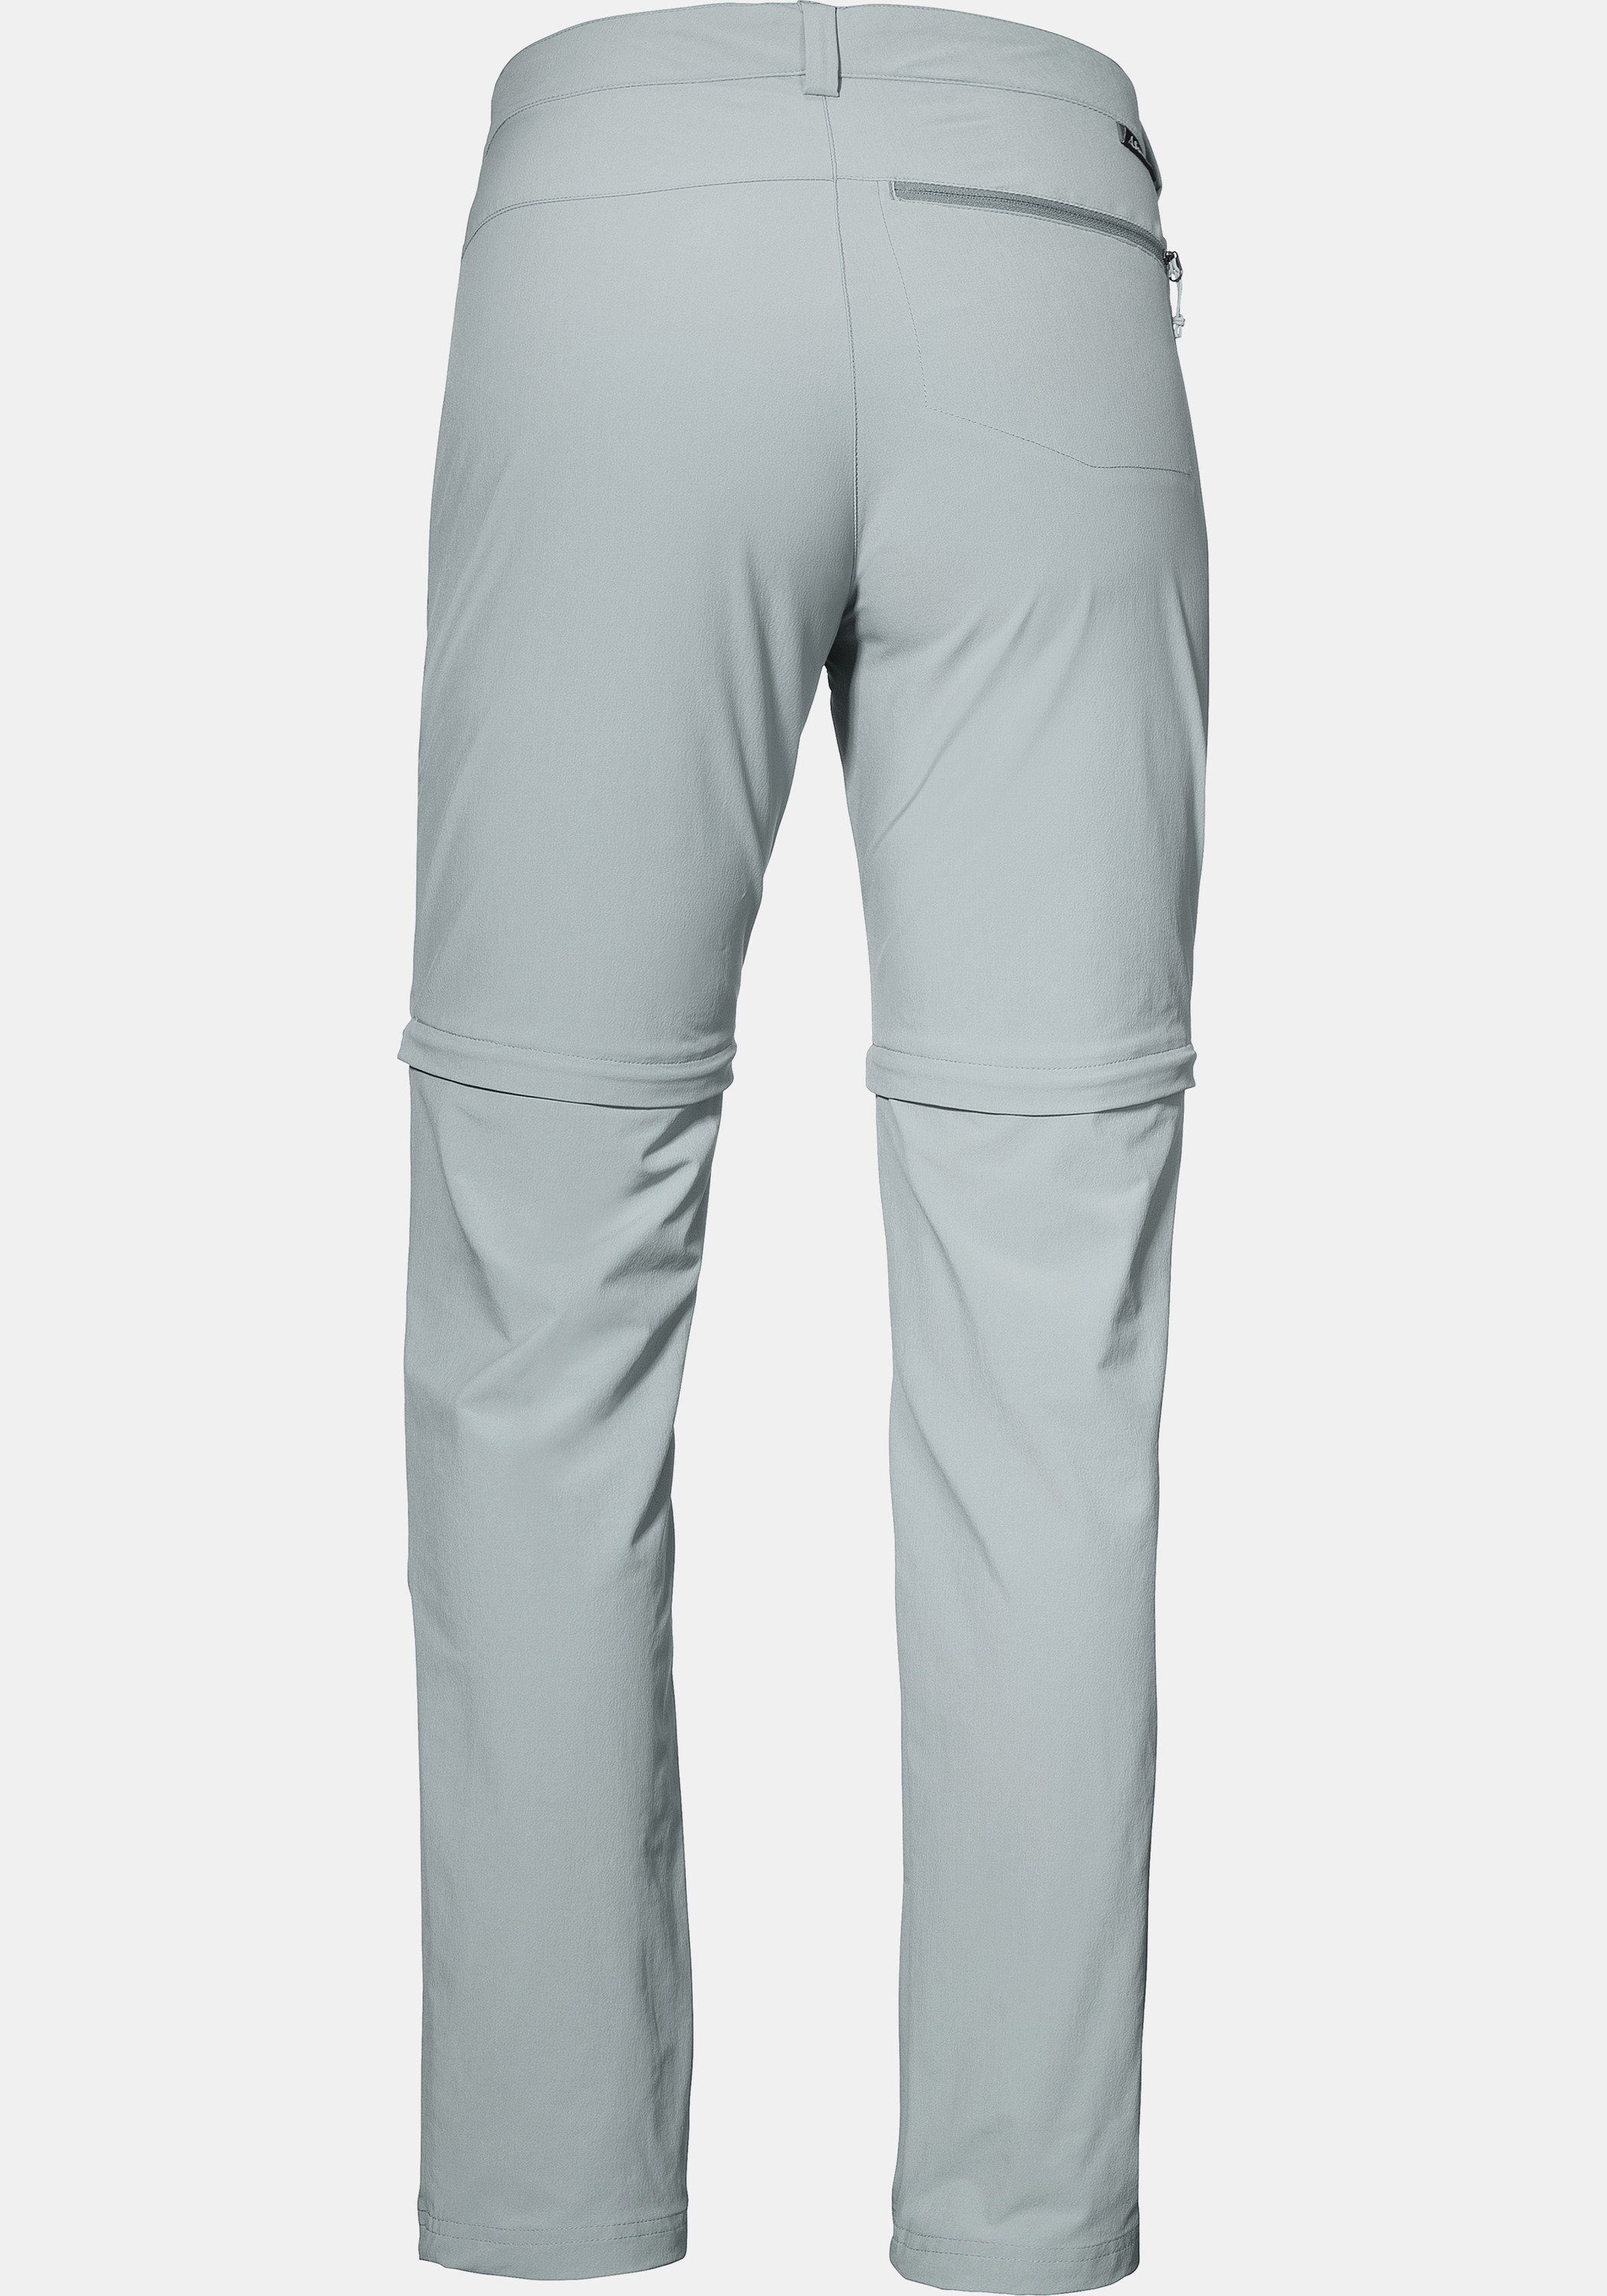 Pants Zip-away-Hose Zip Schöffel grau Off